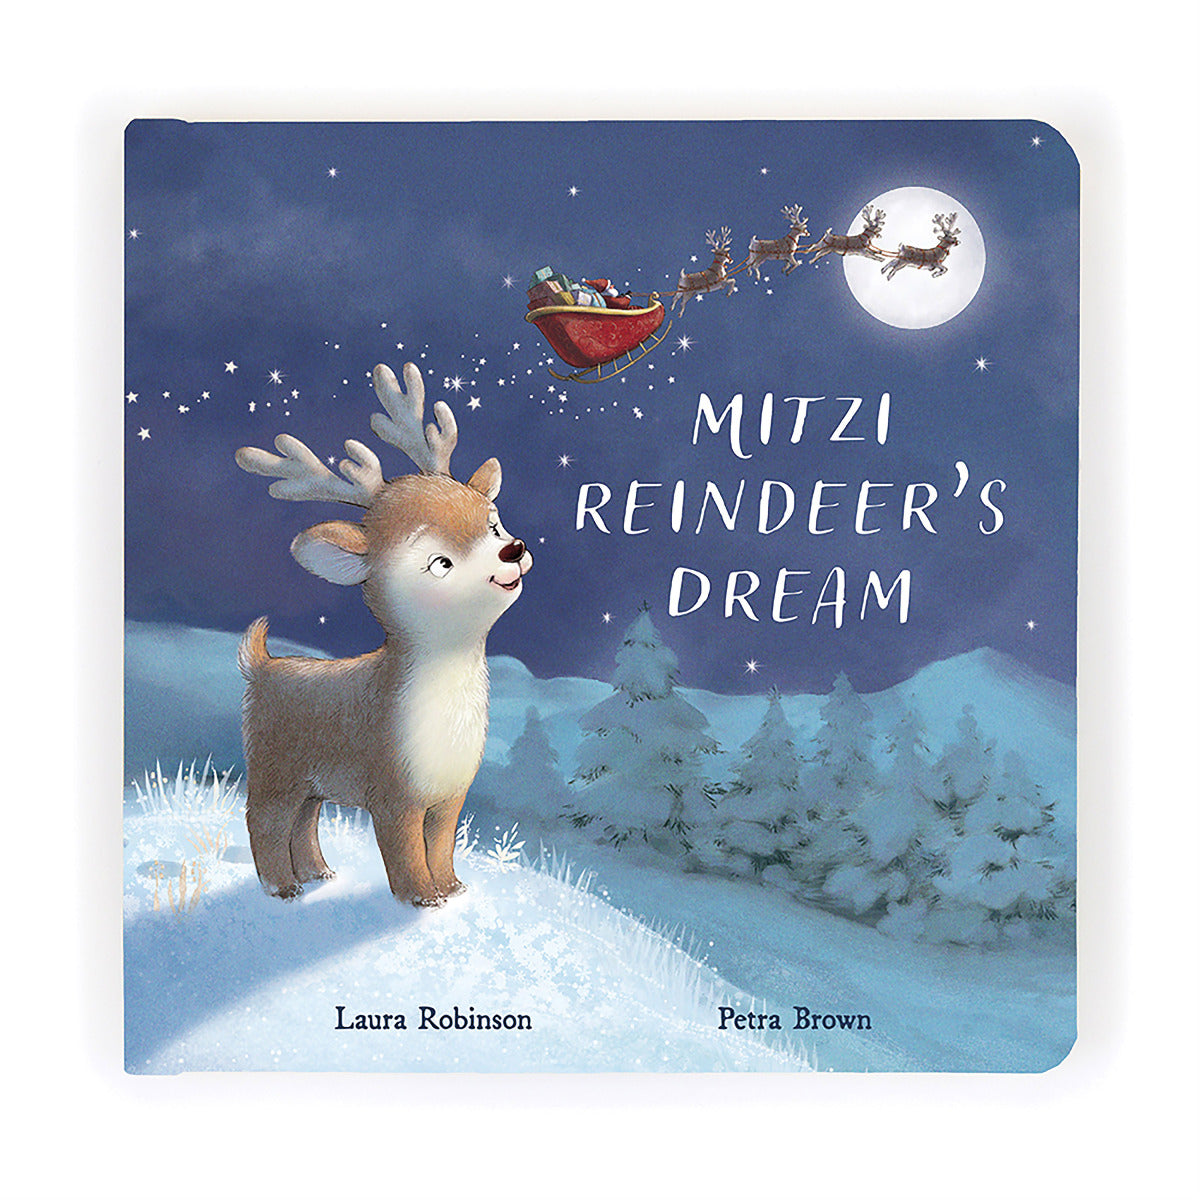 Mitzi Reindeer's Dream Book- Jelly cat